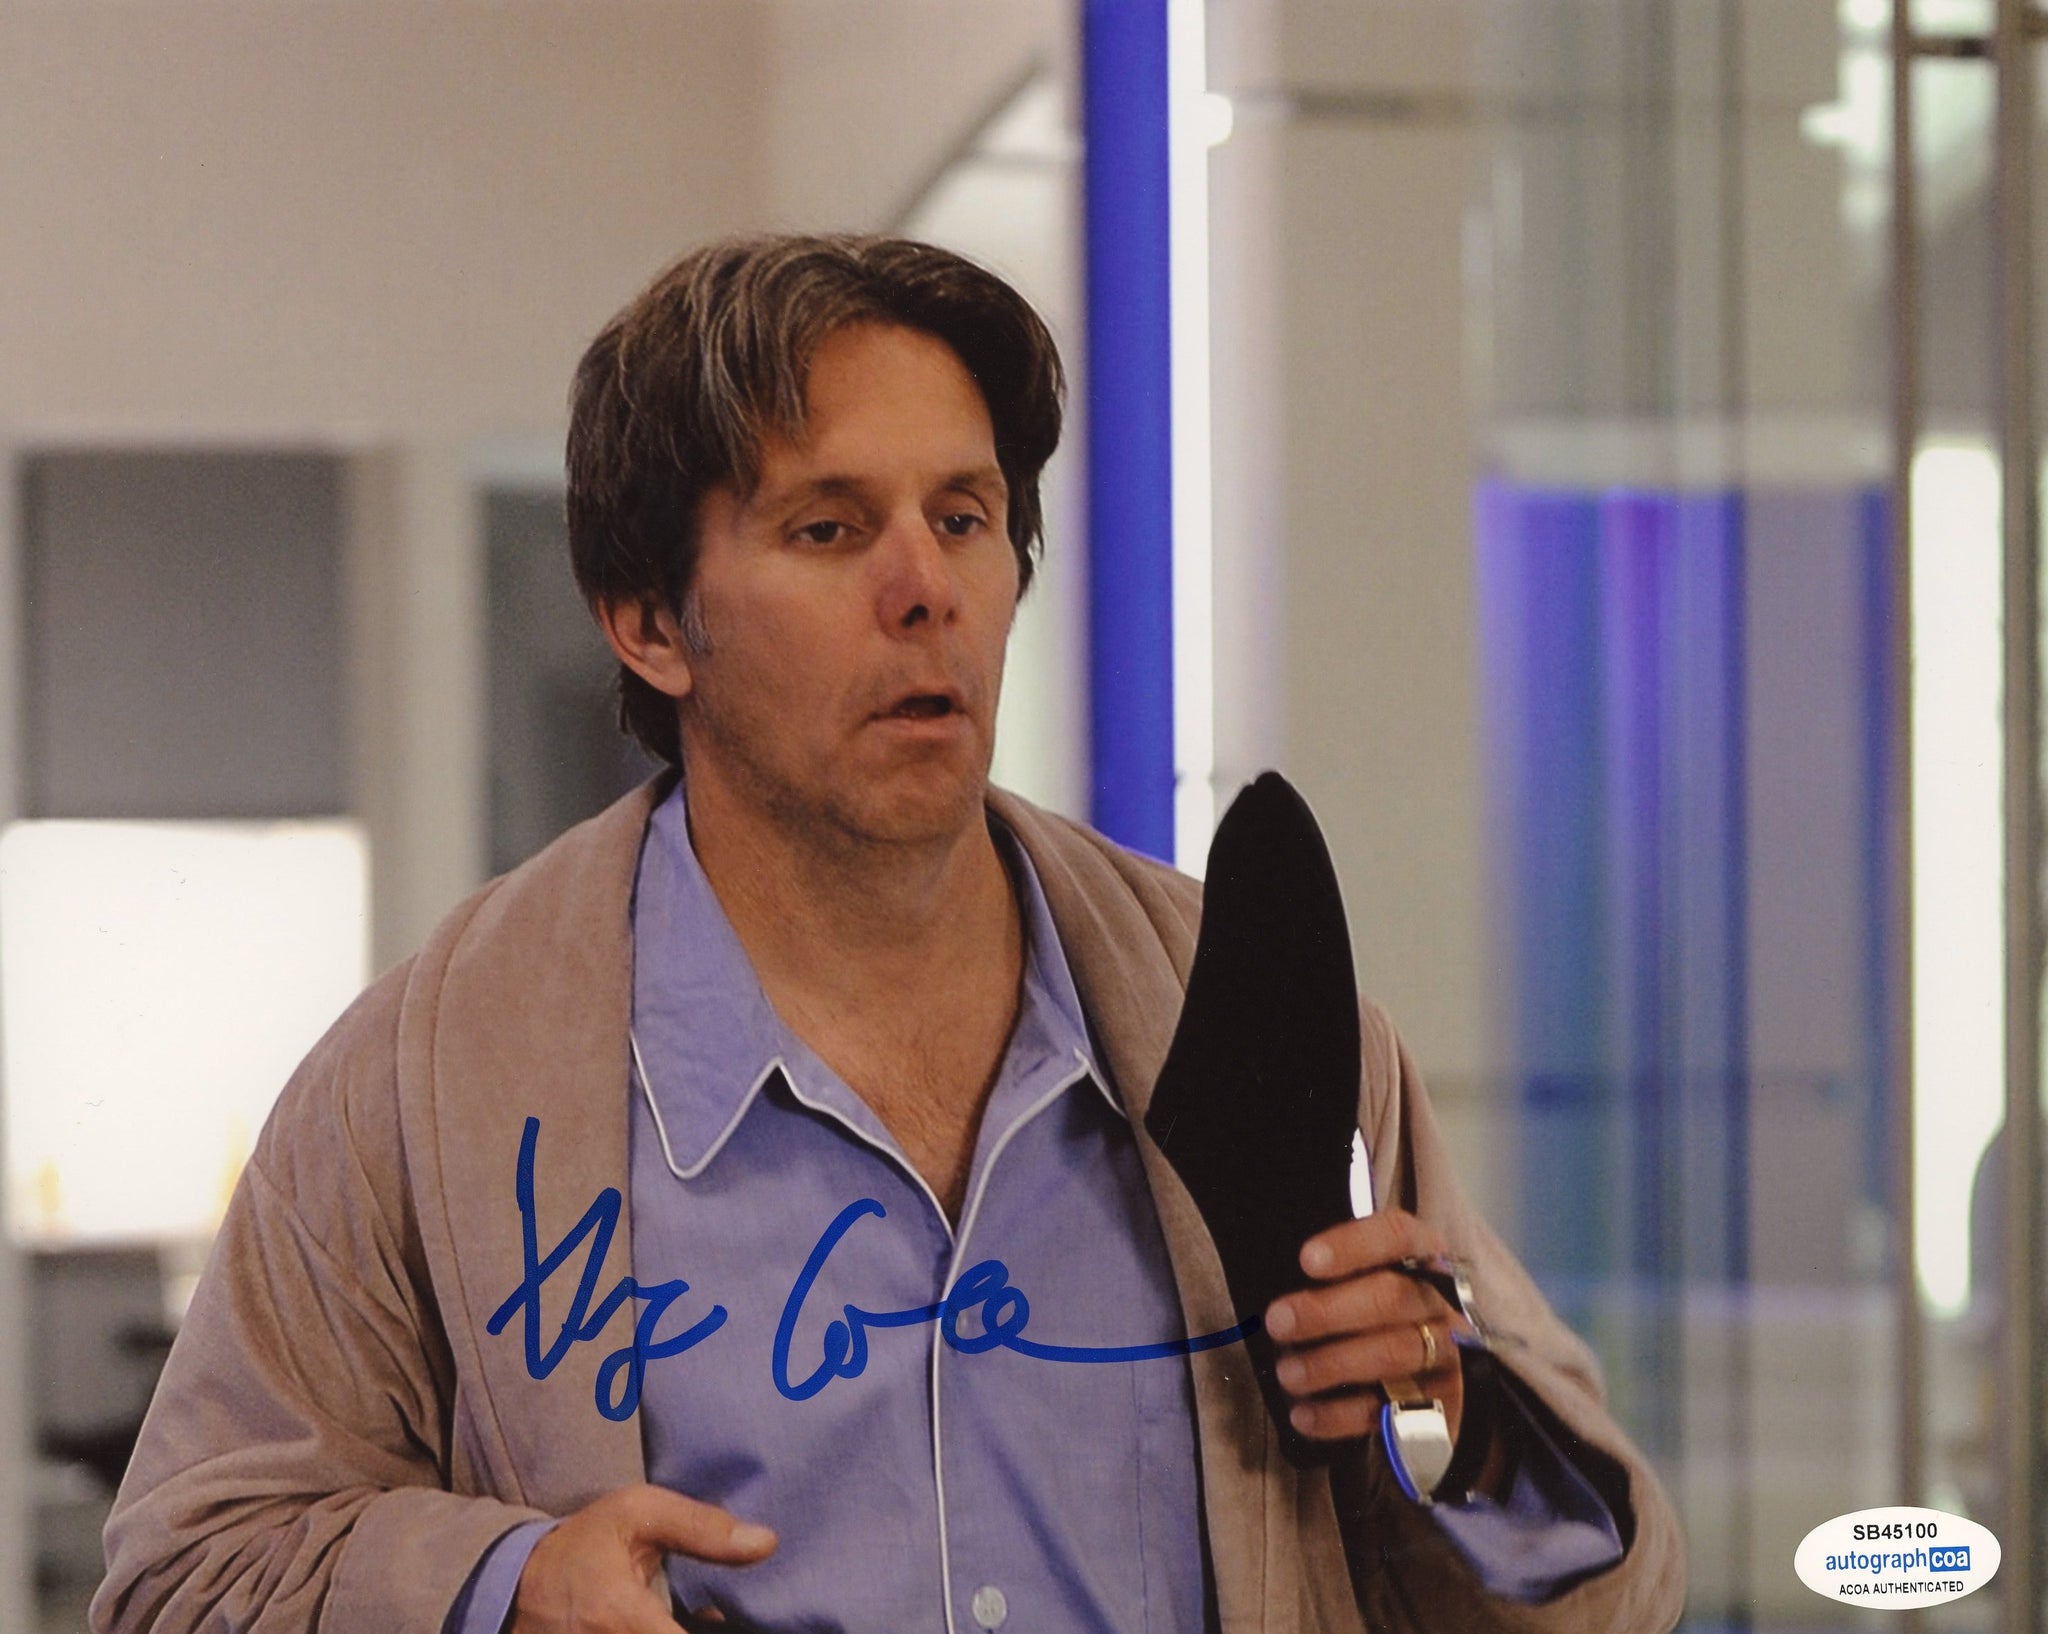 Gary Cole Entourage Signed Autograph 8x10 Photo ACOA